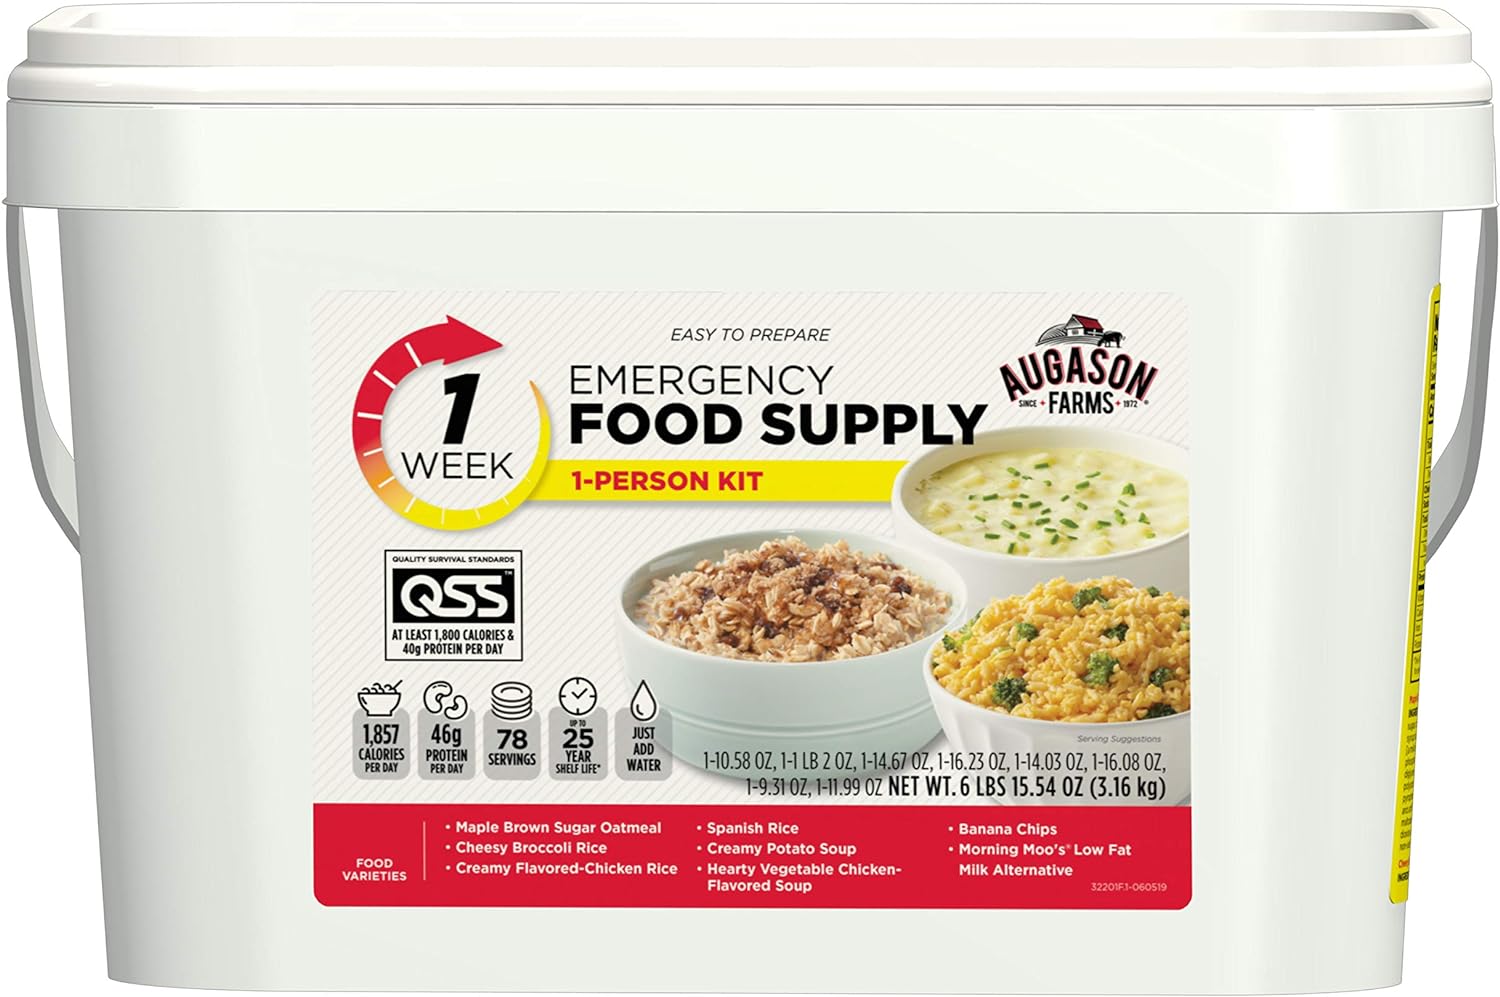 Augason Farms 1-Week 1-Person Emergency Food Supply Kit 6 lbs 15 oz